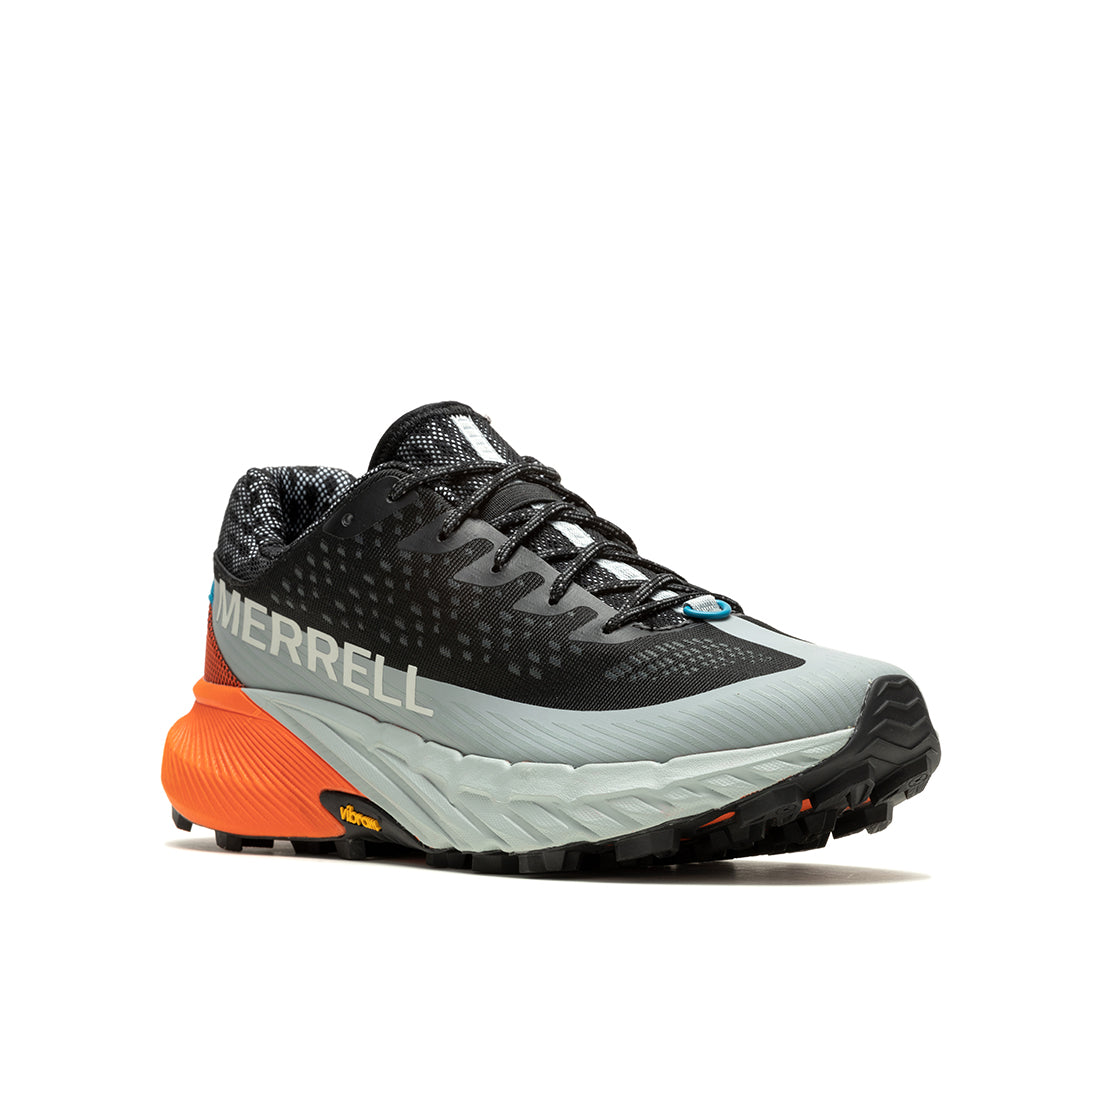 Agility Peak 5-Black/Tangerine Mens Trail Running Shoes | Merrell ...